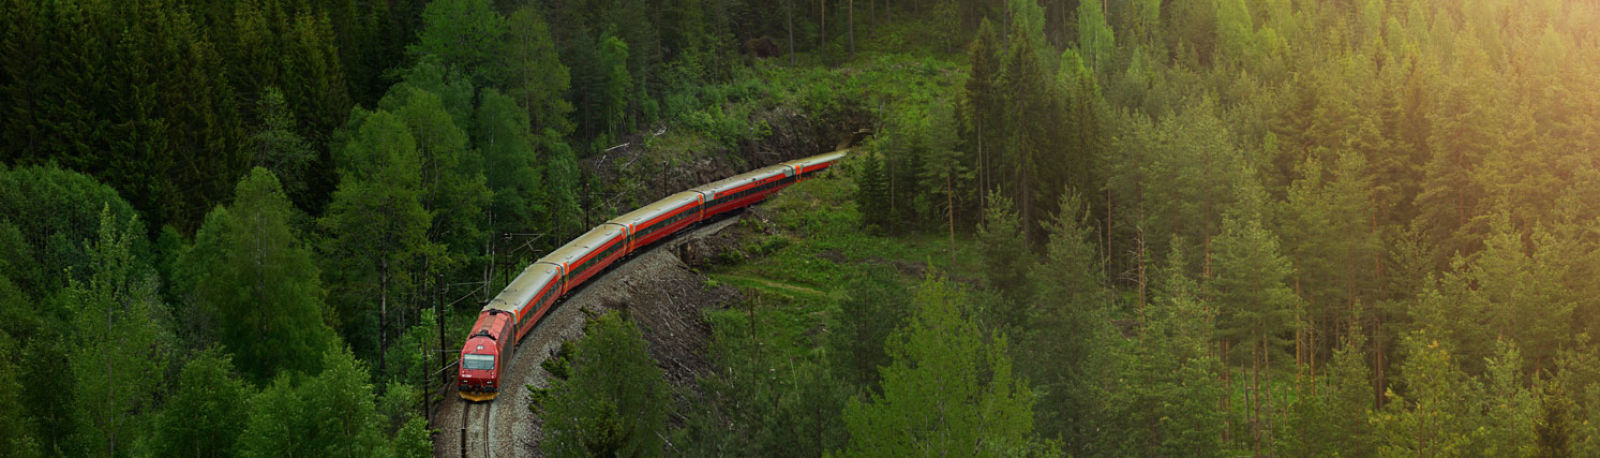 Bergbahn in einer Landschaft in Norwegen © Oivind Haug